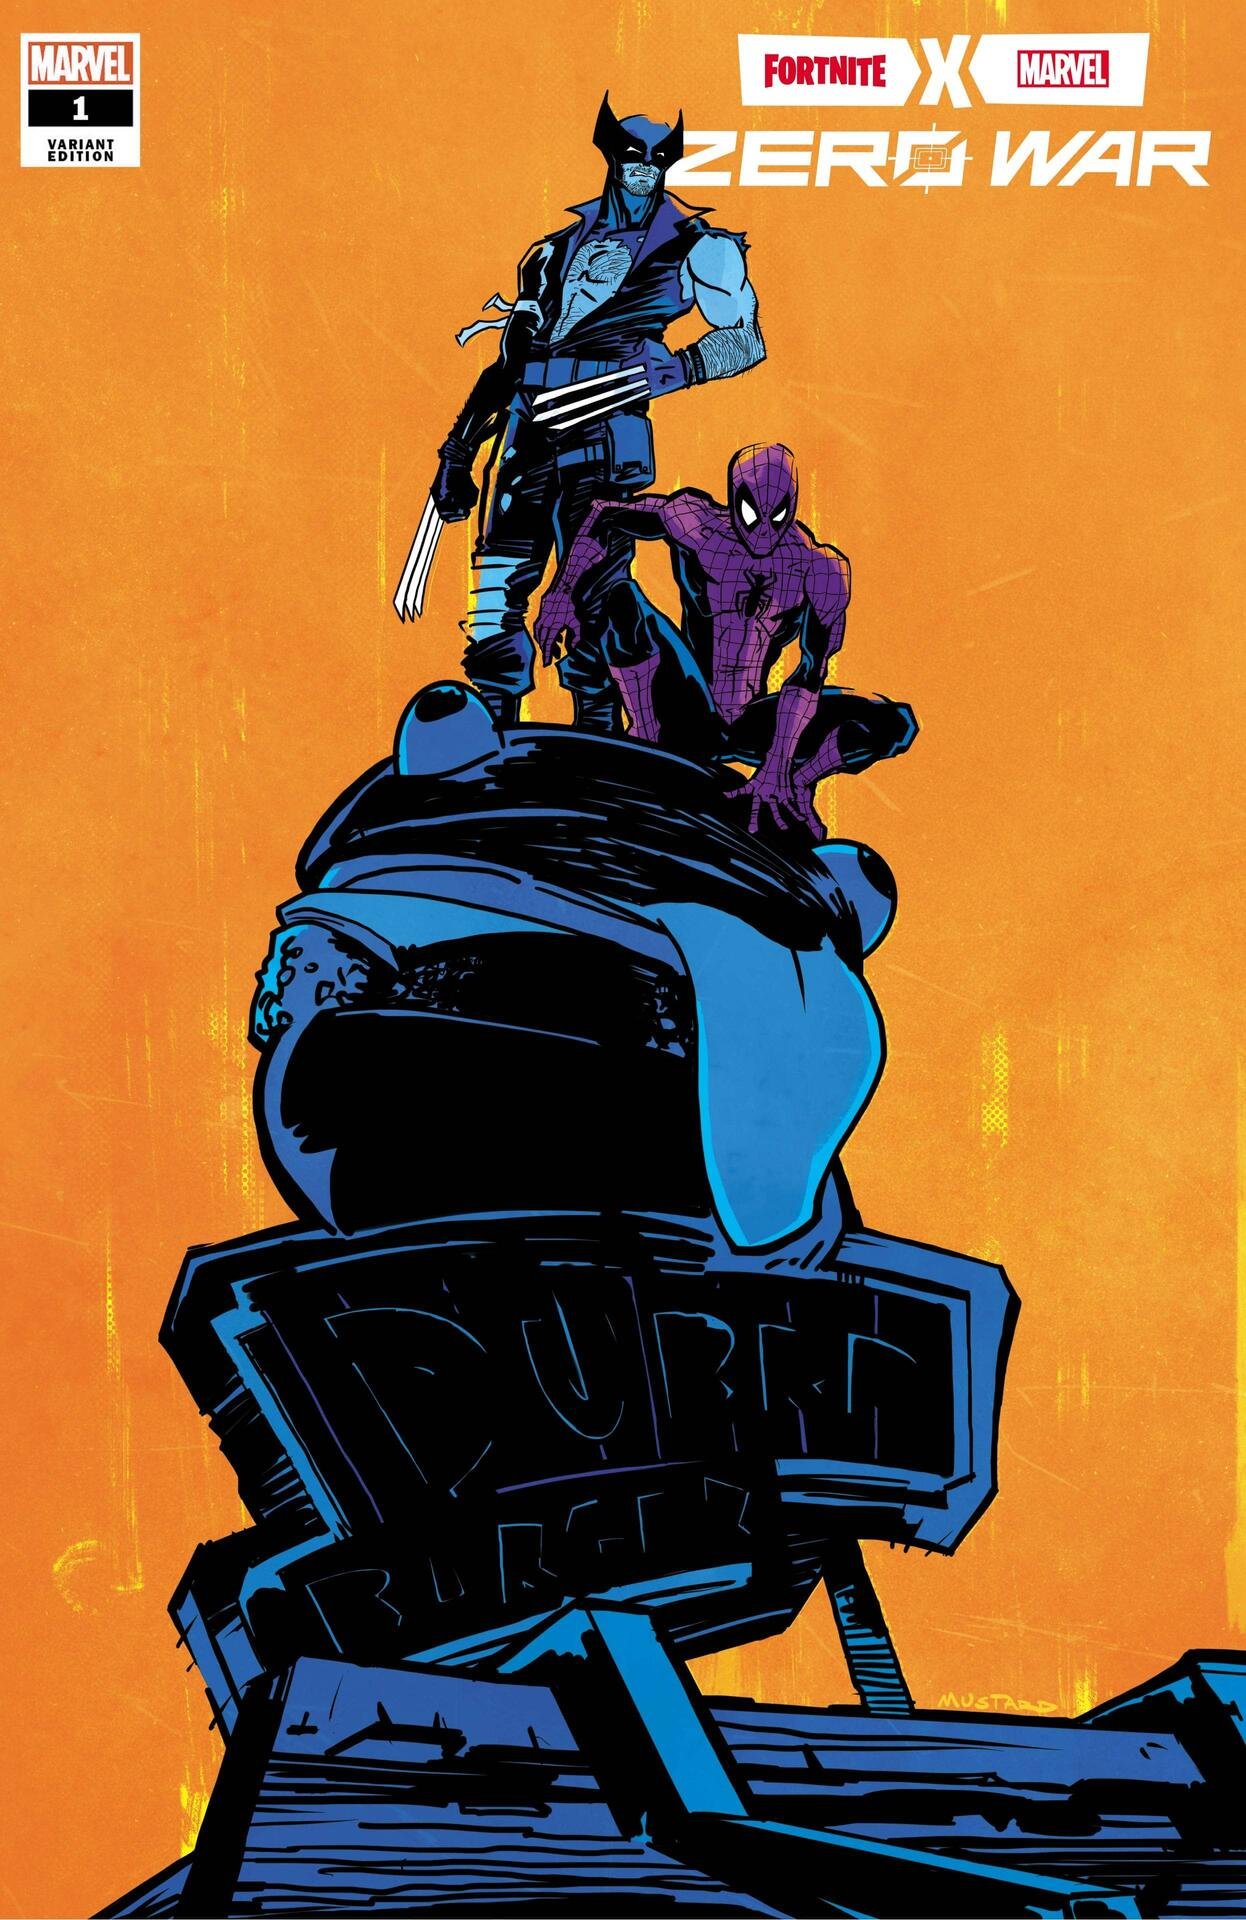 Variant Cover di Fortnite X Marvel: Zero War 1 di Donald Mustard